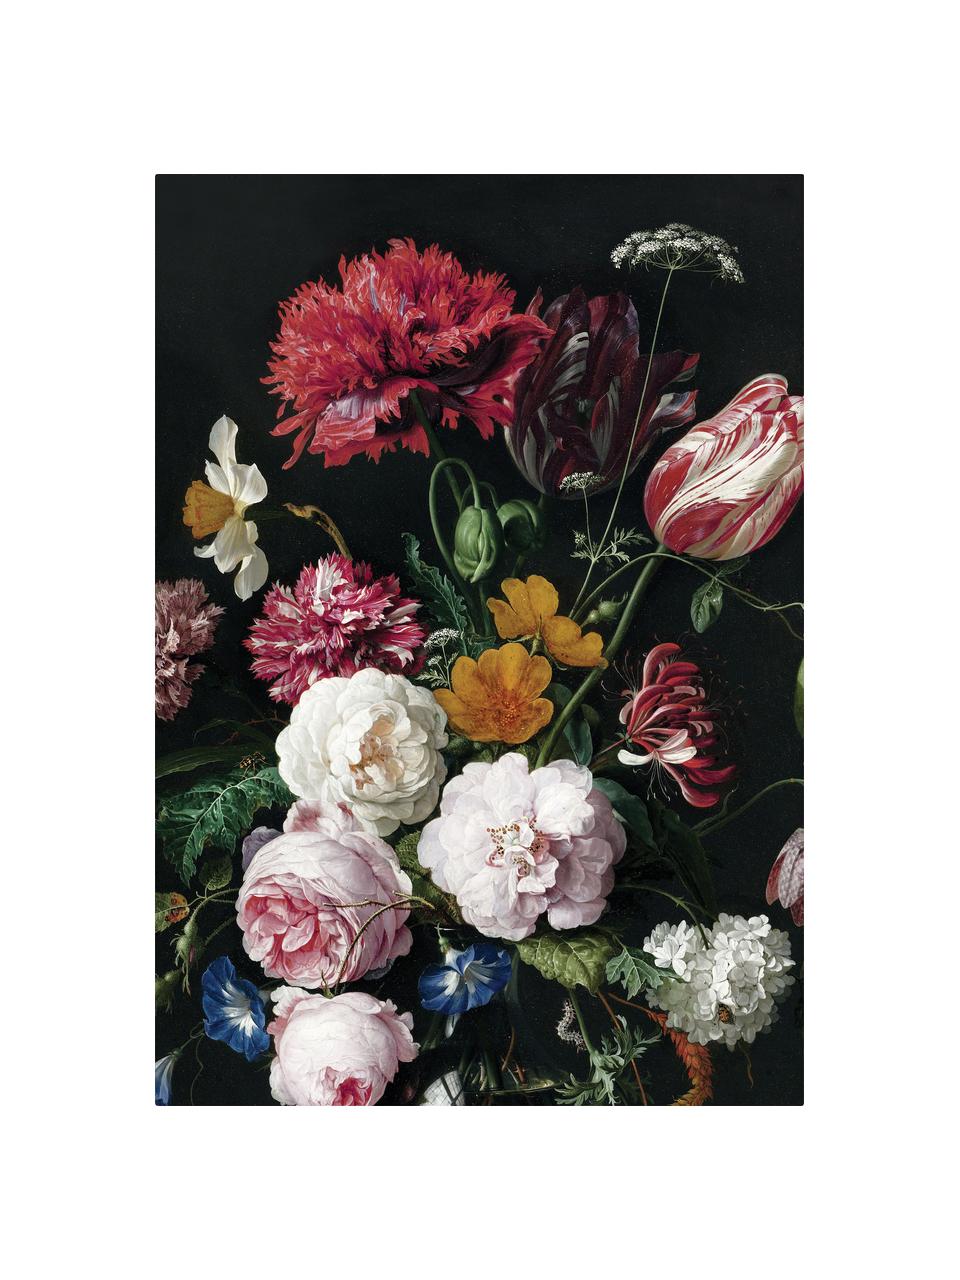 Fototapeta Golden Age Flowers, Włóknina, przyjazna dla środowiska, biodegradowalna, Wielobarwny, matowy, S 196 x W 280 cm